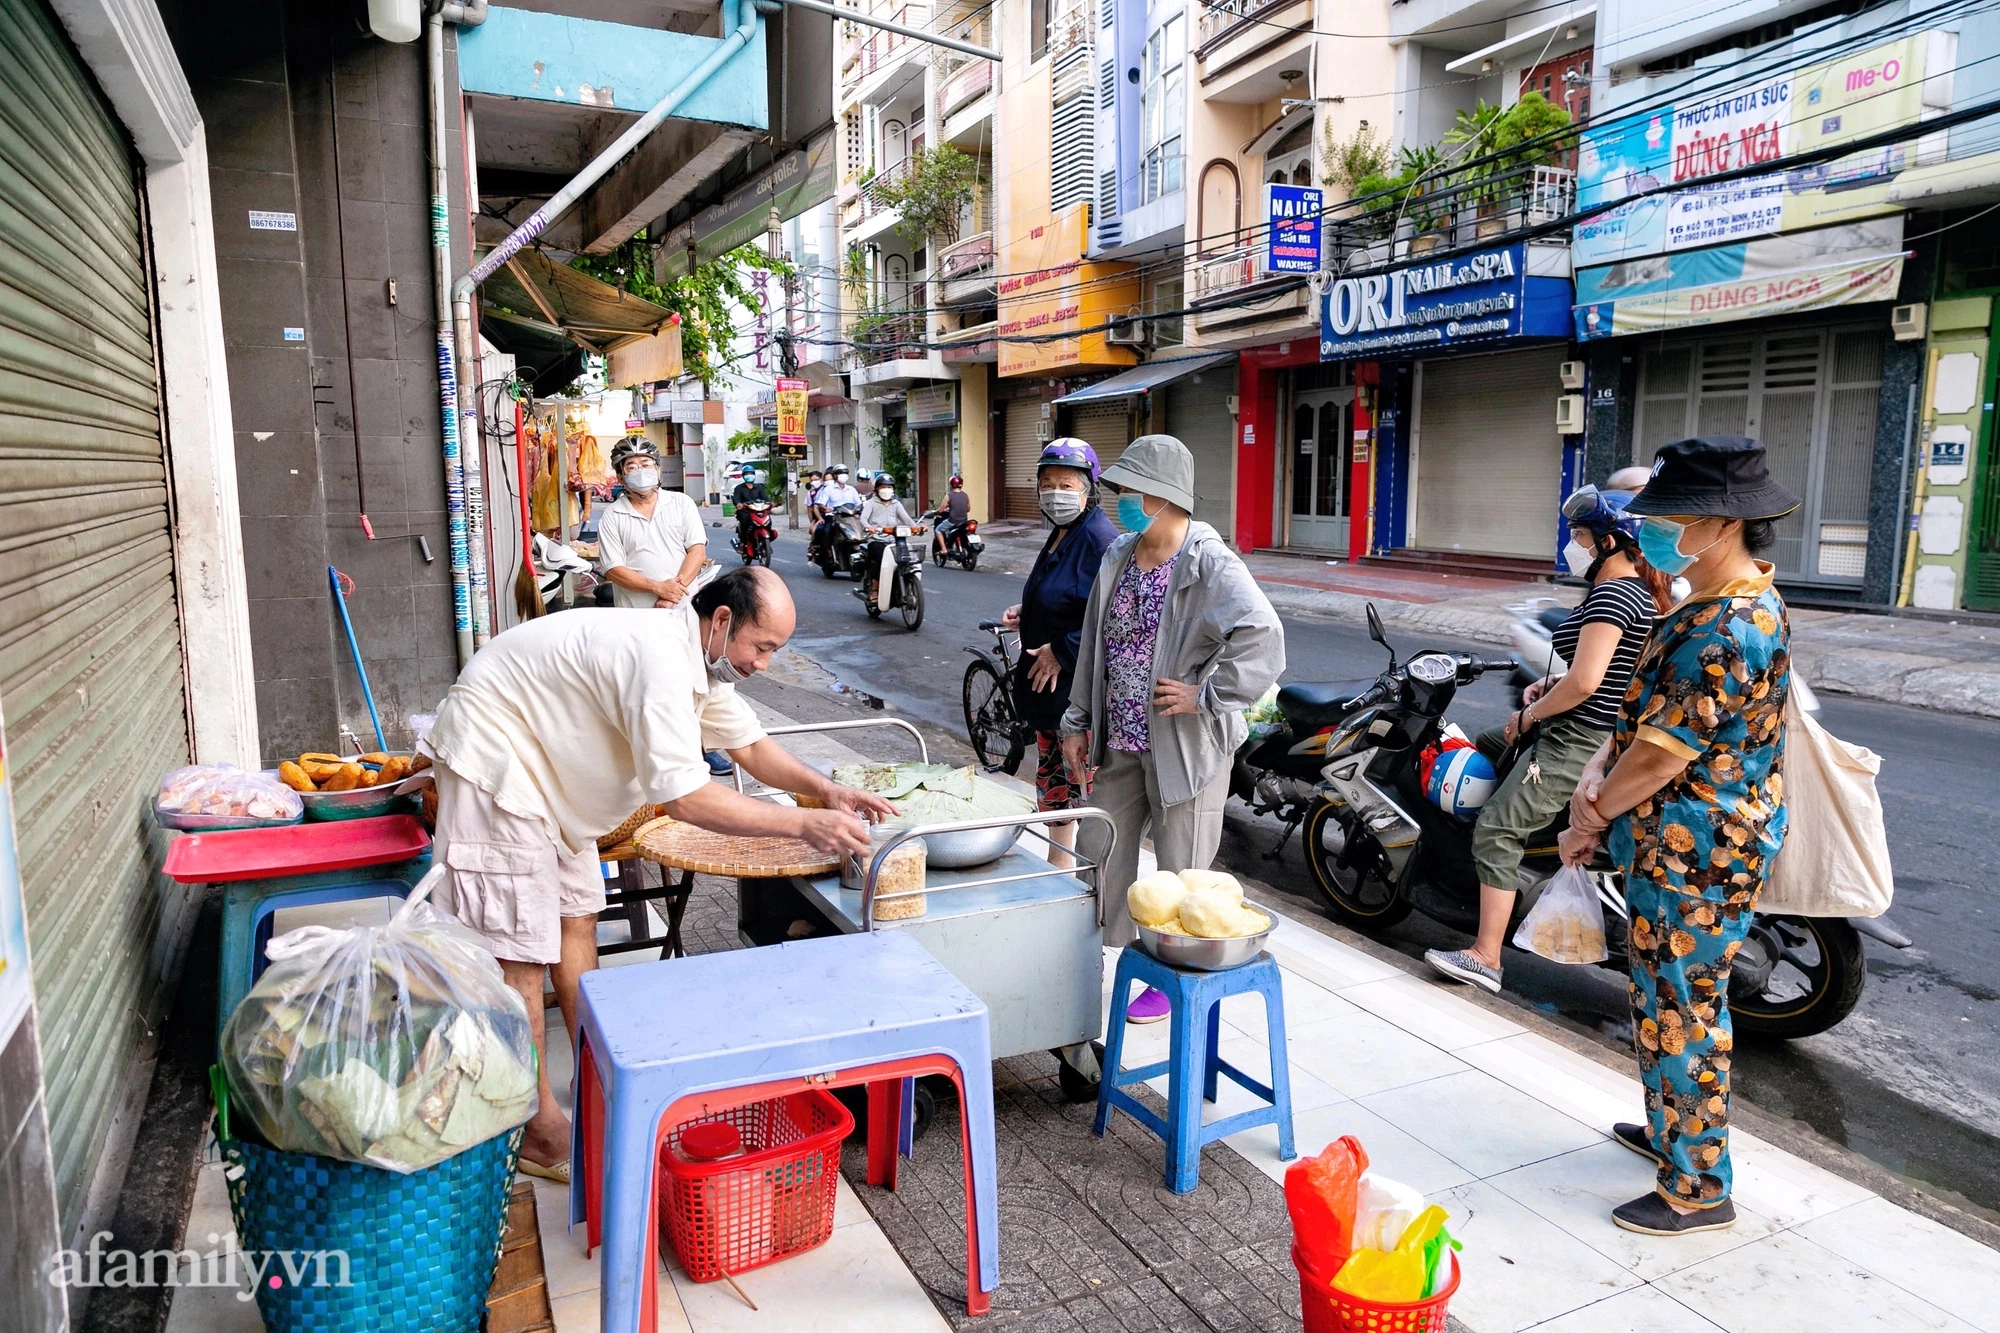 Hàng xôi bọc lá sen tươi đậm chất Bắc giữa lòng Sài Gòn, chỉ bán 2 tiếng mỗi ngày vì quá đông, khiến "cậu cả" bỏ đại học để nối nghiệp gia đình - Ảnh 2.